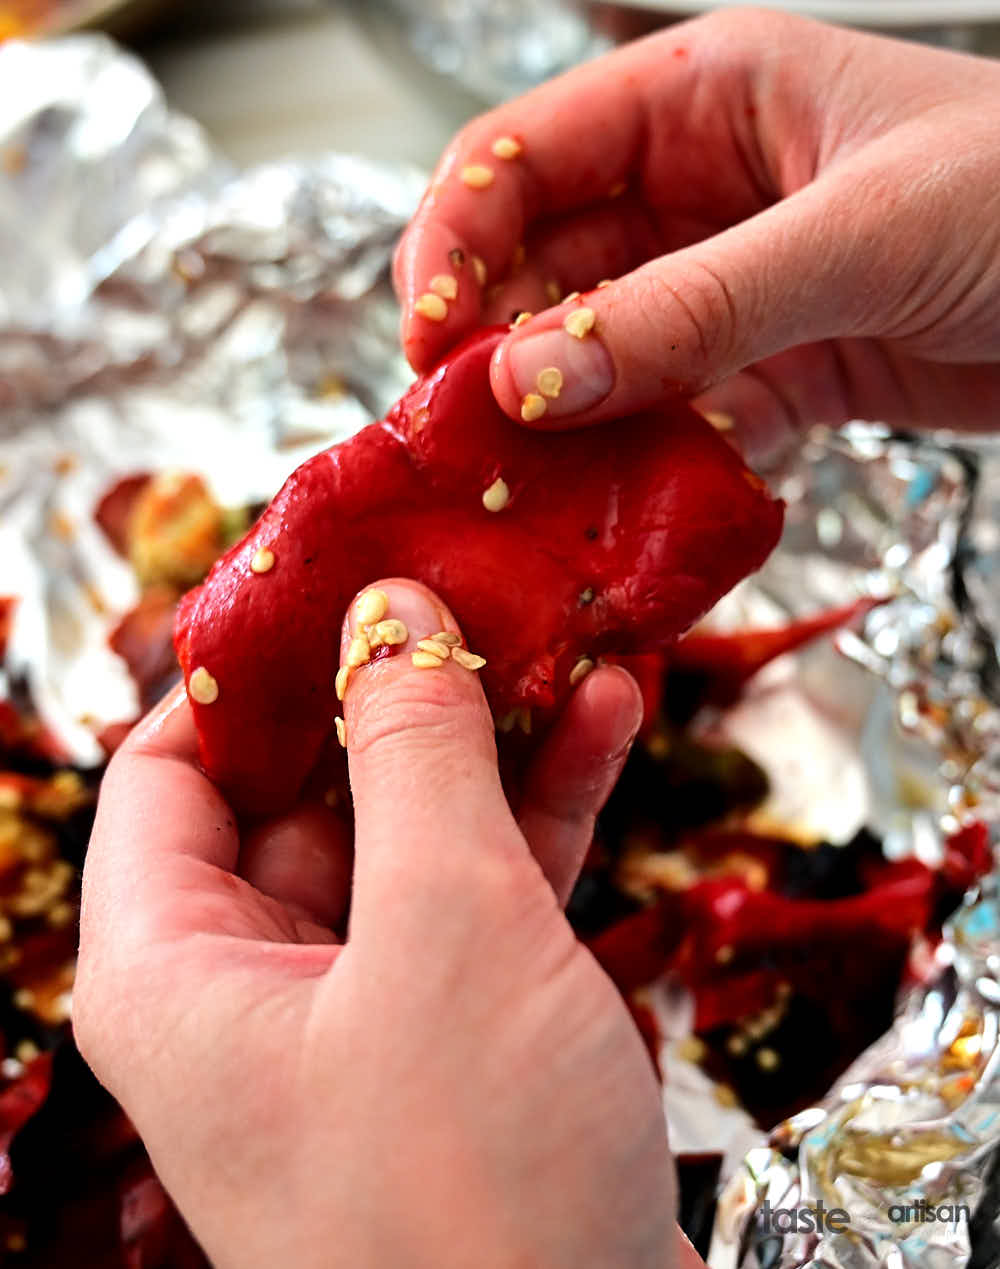 Peeling peppers.